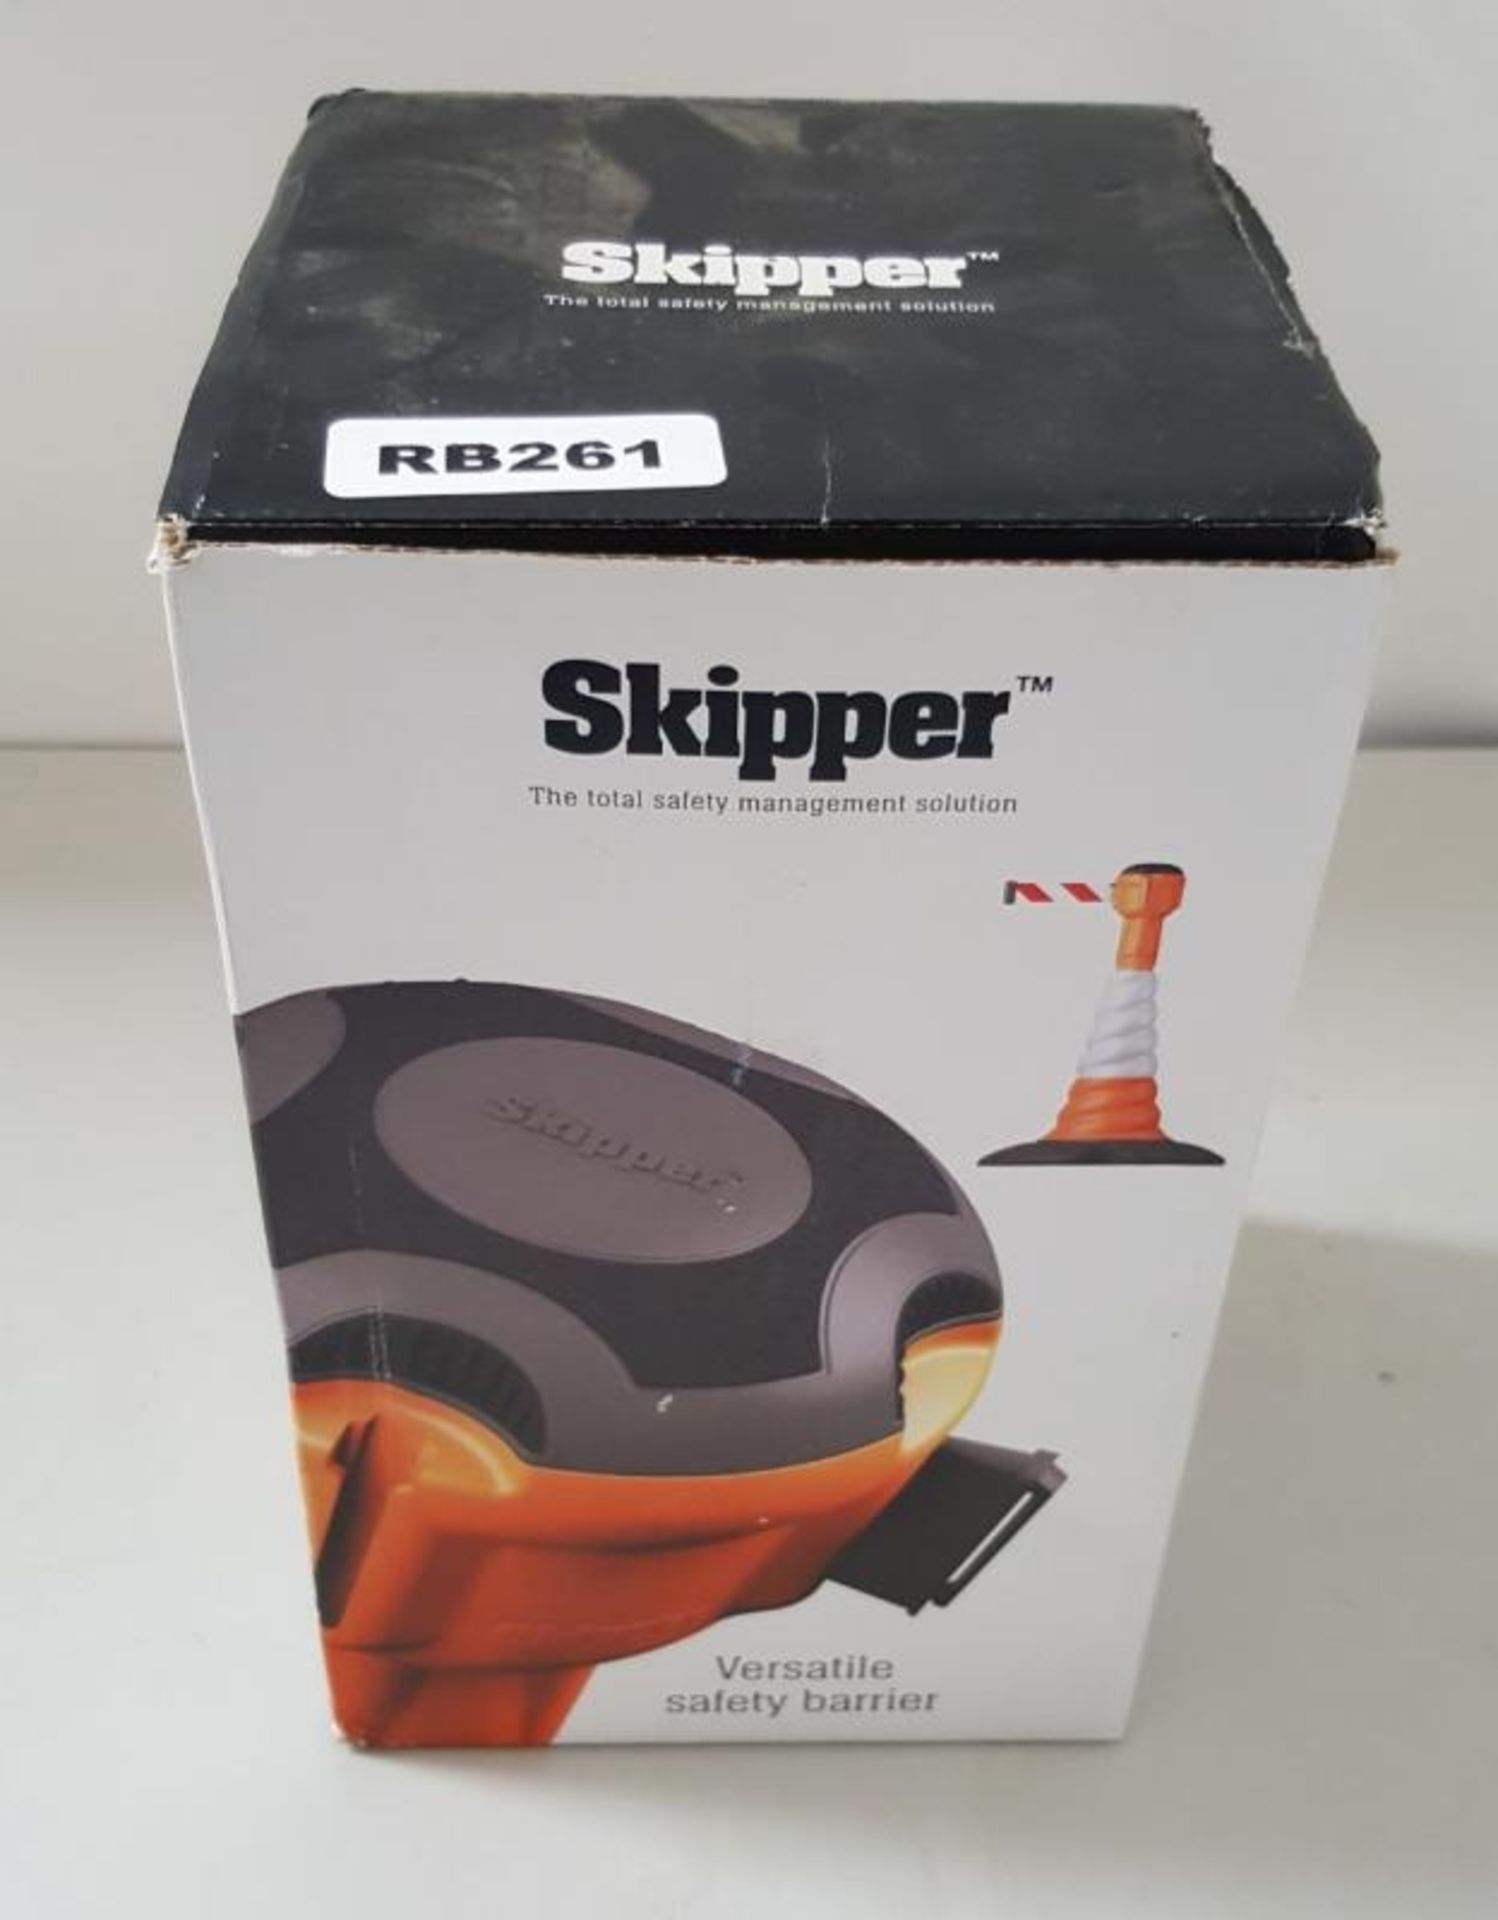 1 x Skipper Versatile Safety Barrier &amp; Skipper Magnetic Support Bracket - Ref RB261 G3 - CL394